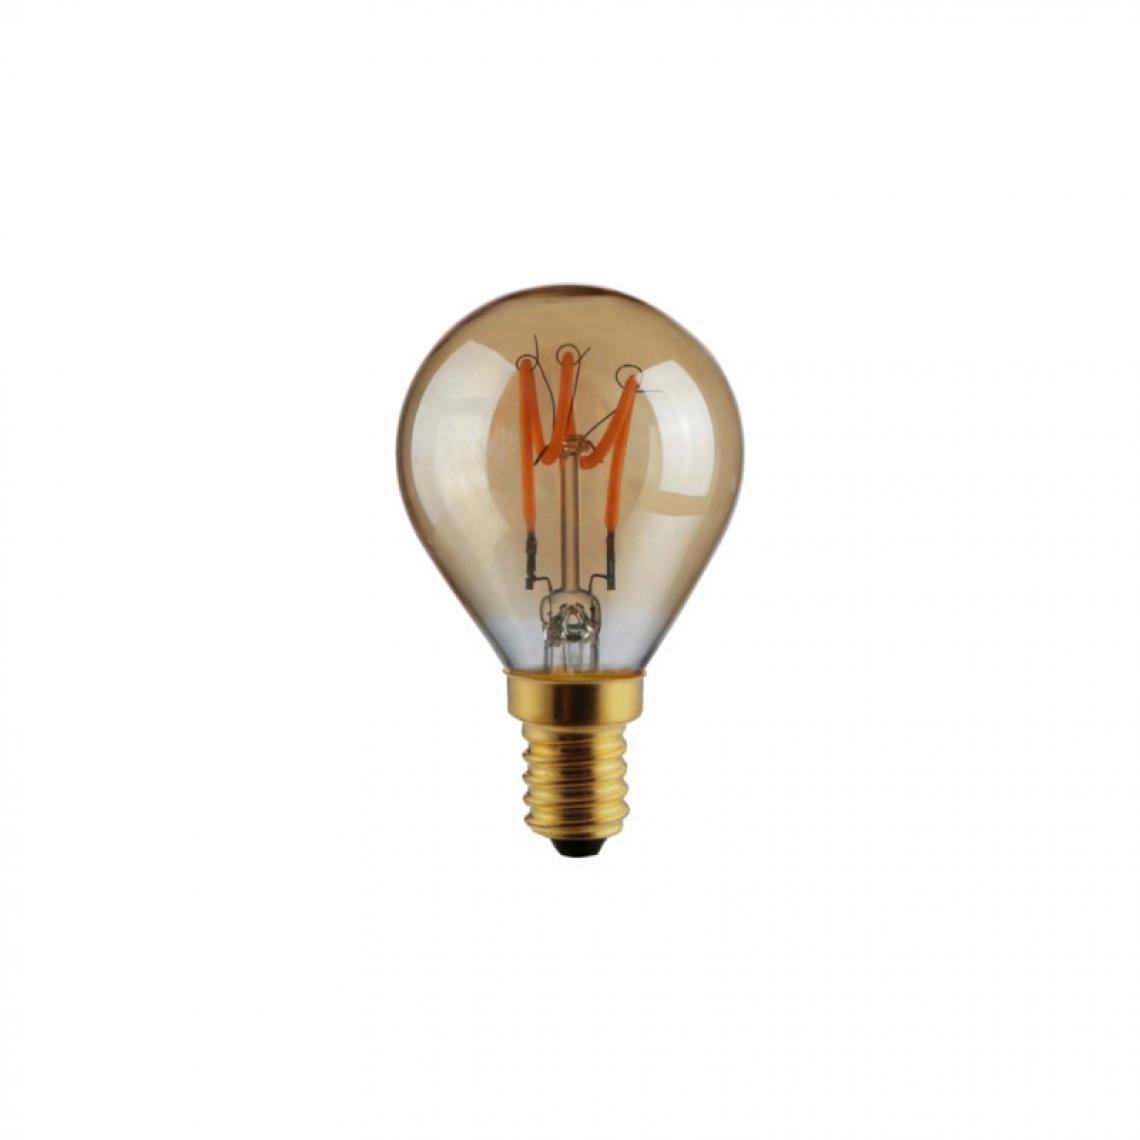 Xxcell - Ampoule LED globe à filament XXCELL - 3 W - 130 lumens - 2100 K - E14 - Ampoules LED